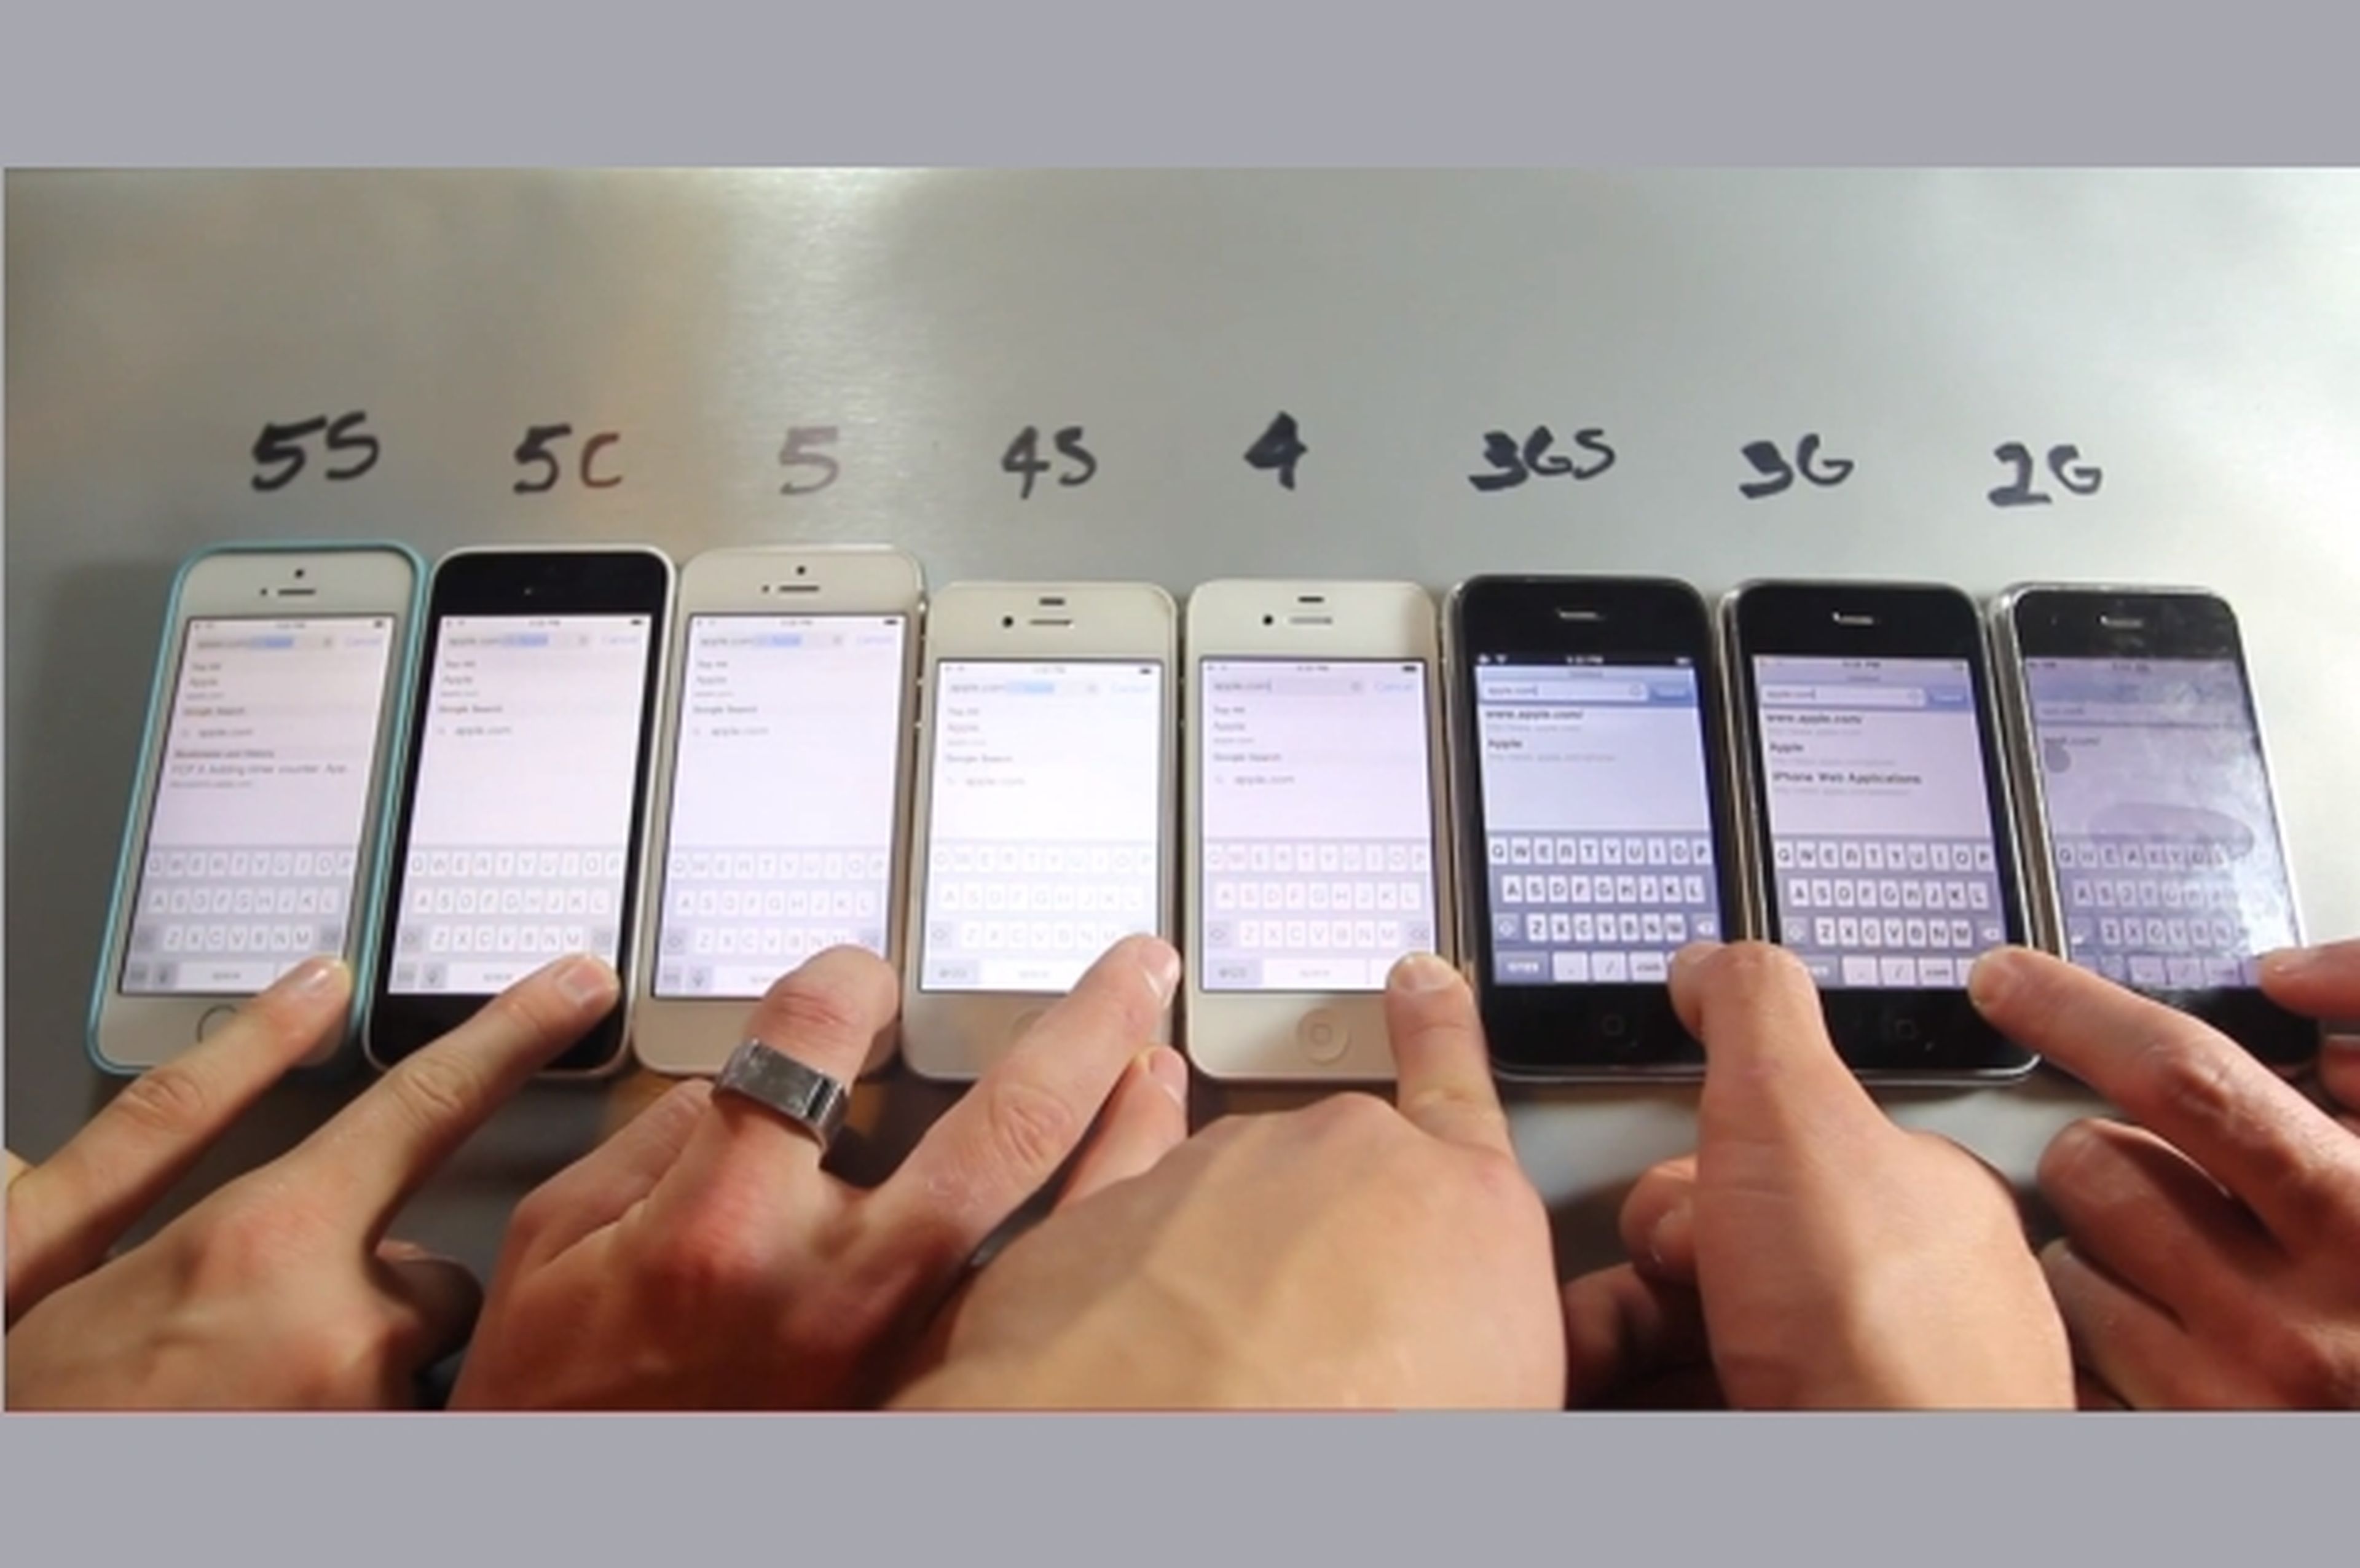 Todos los iPhone funcionando al mismo tiempo, en vídeo